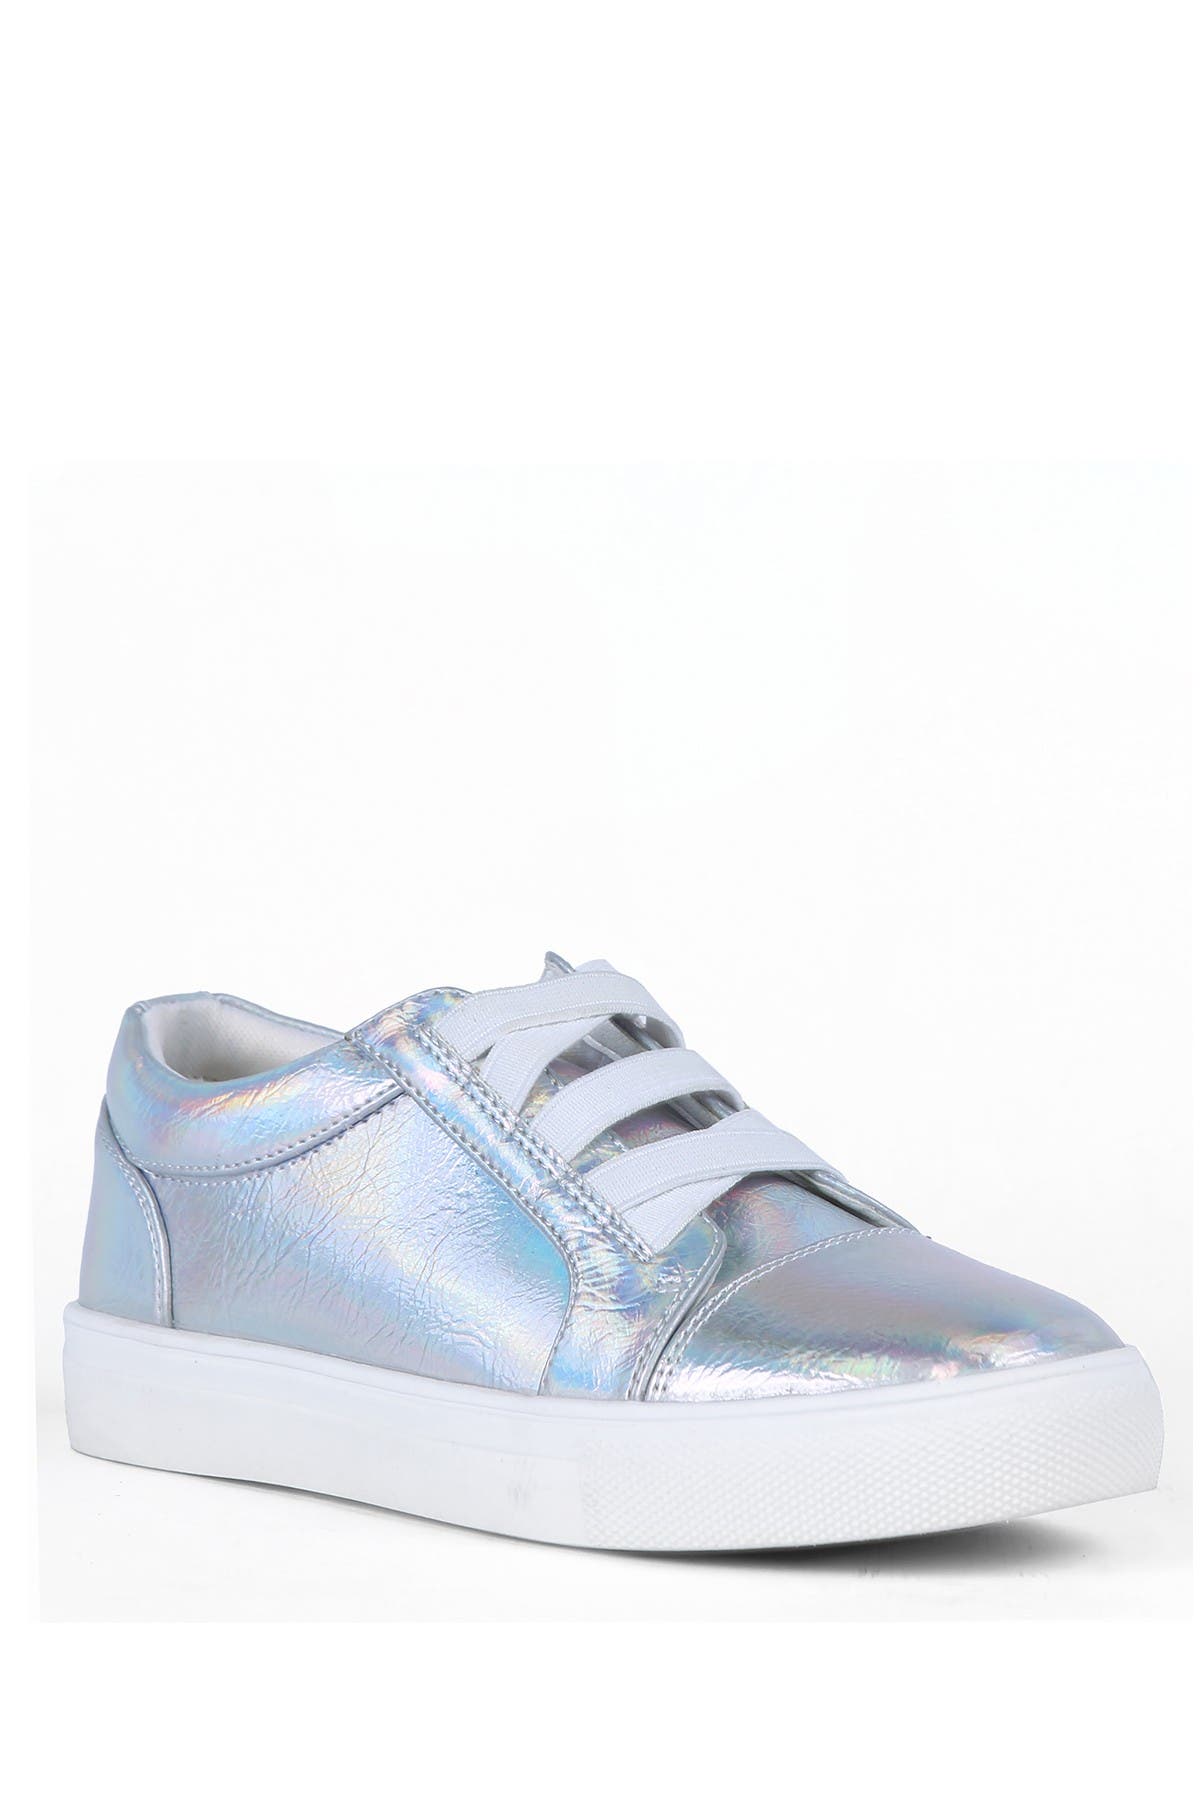 Dv Dolce Vita Kids' Silania Elastic Sneaker In Silver8